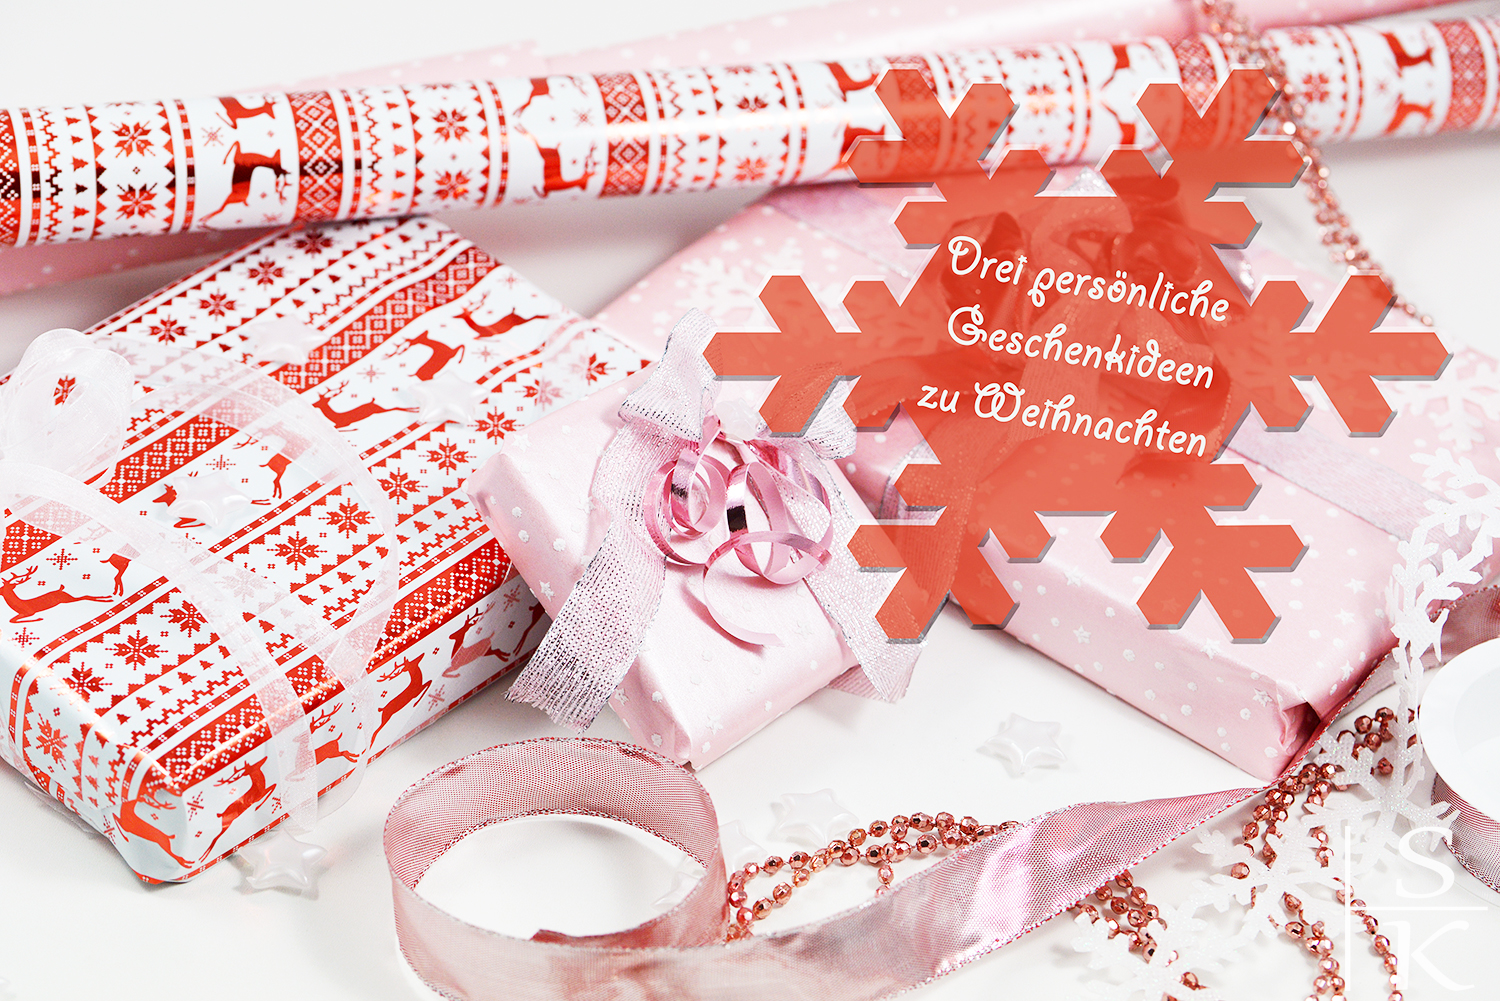 Persönliche Geschenkideen für Weihnachten Saskia-Katharina Most Horizont-Blog